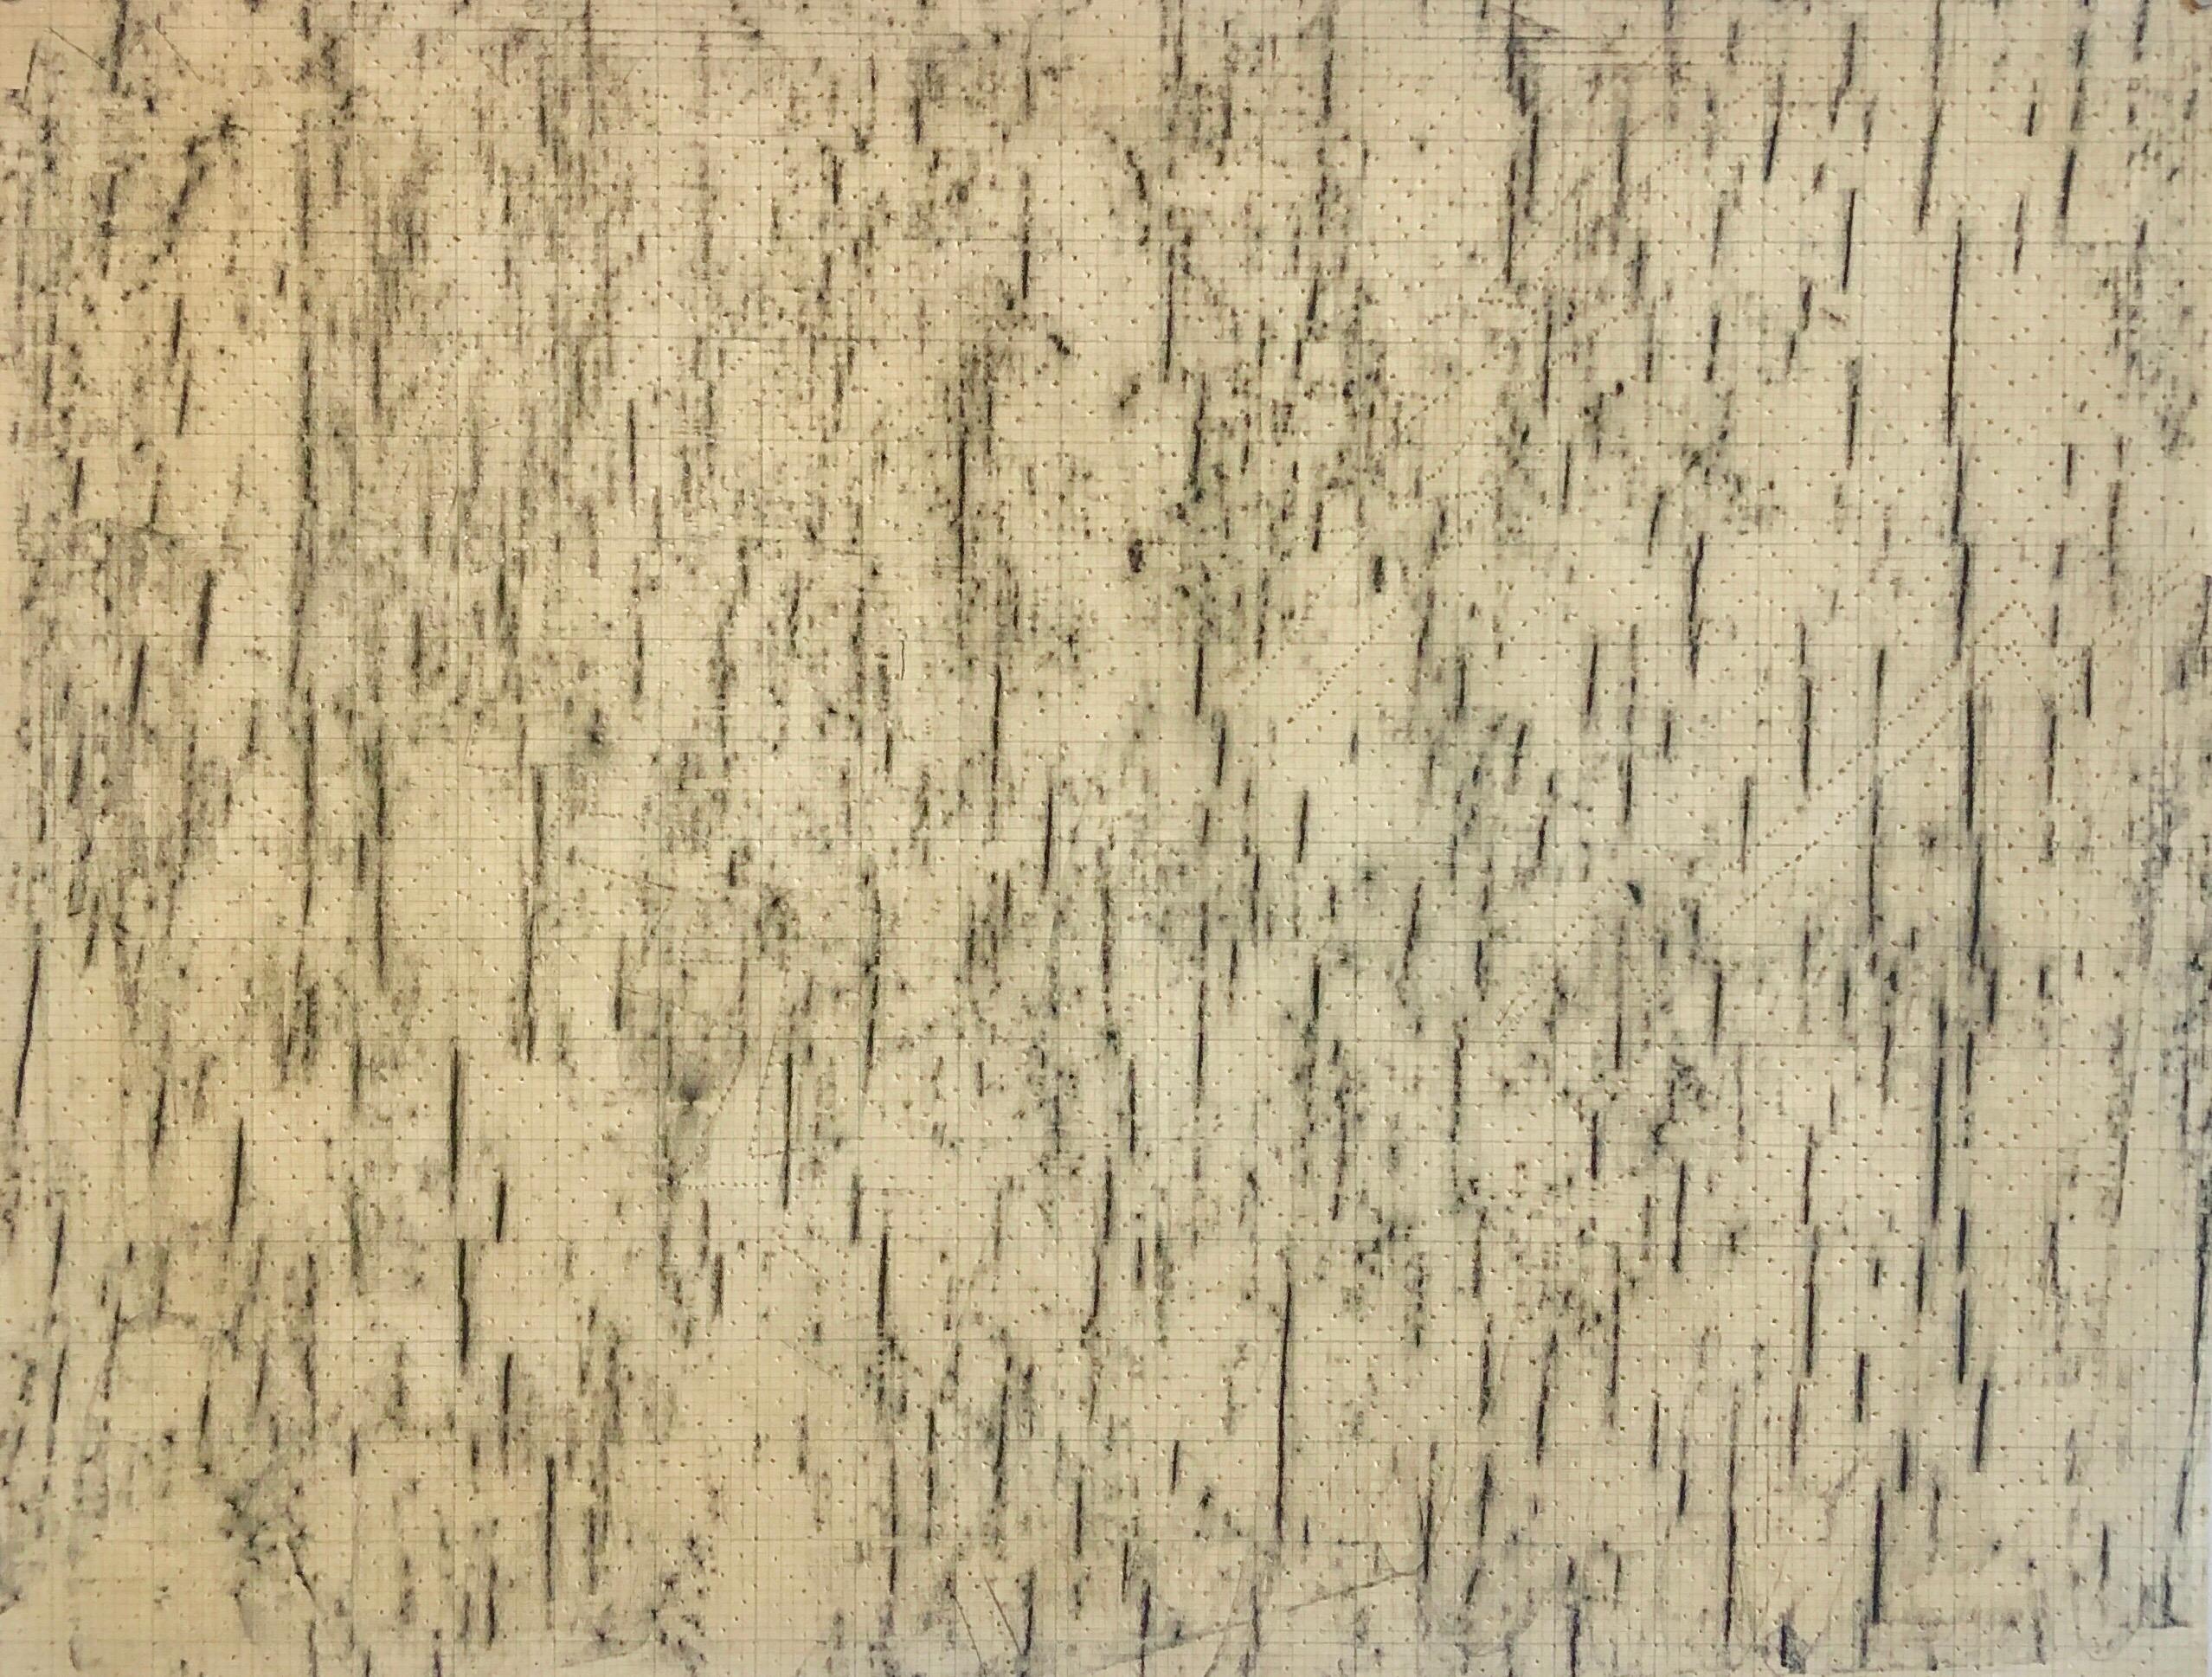 Abstrakt-expressionistische Bleistiftzeichnung, durchbrochenes Papier, Gemälde-Muster, Dekoration